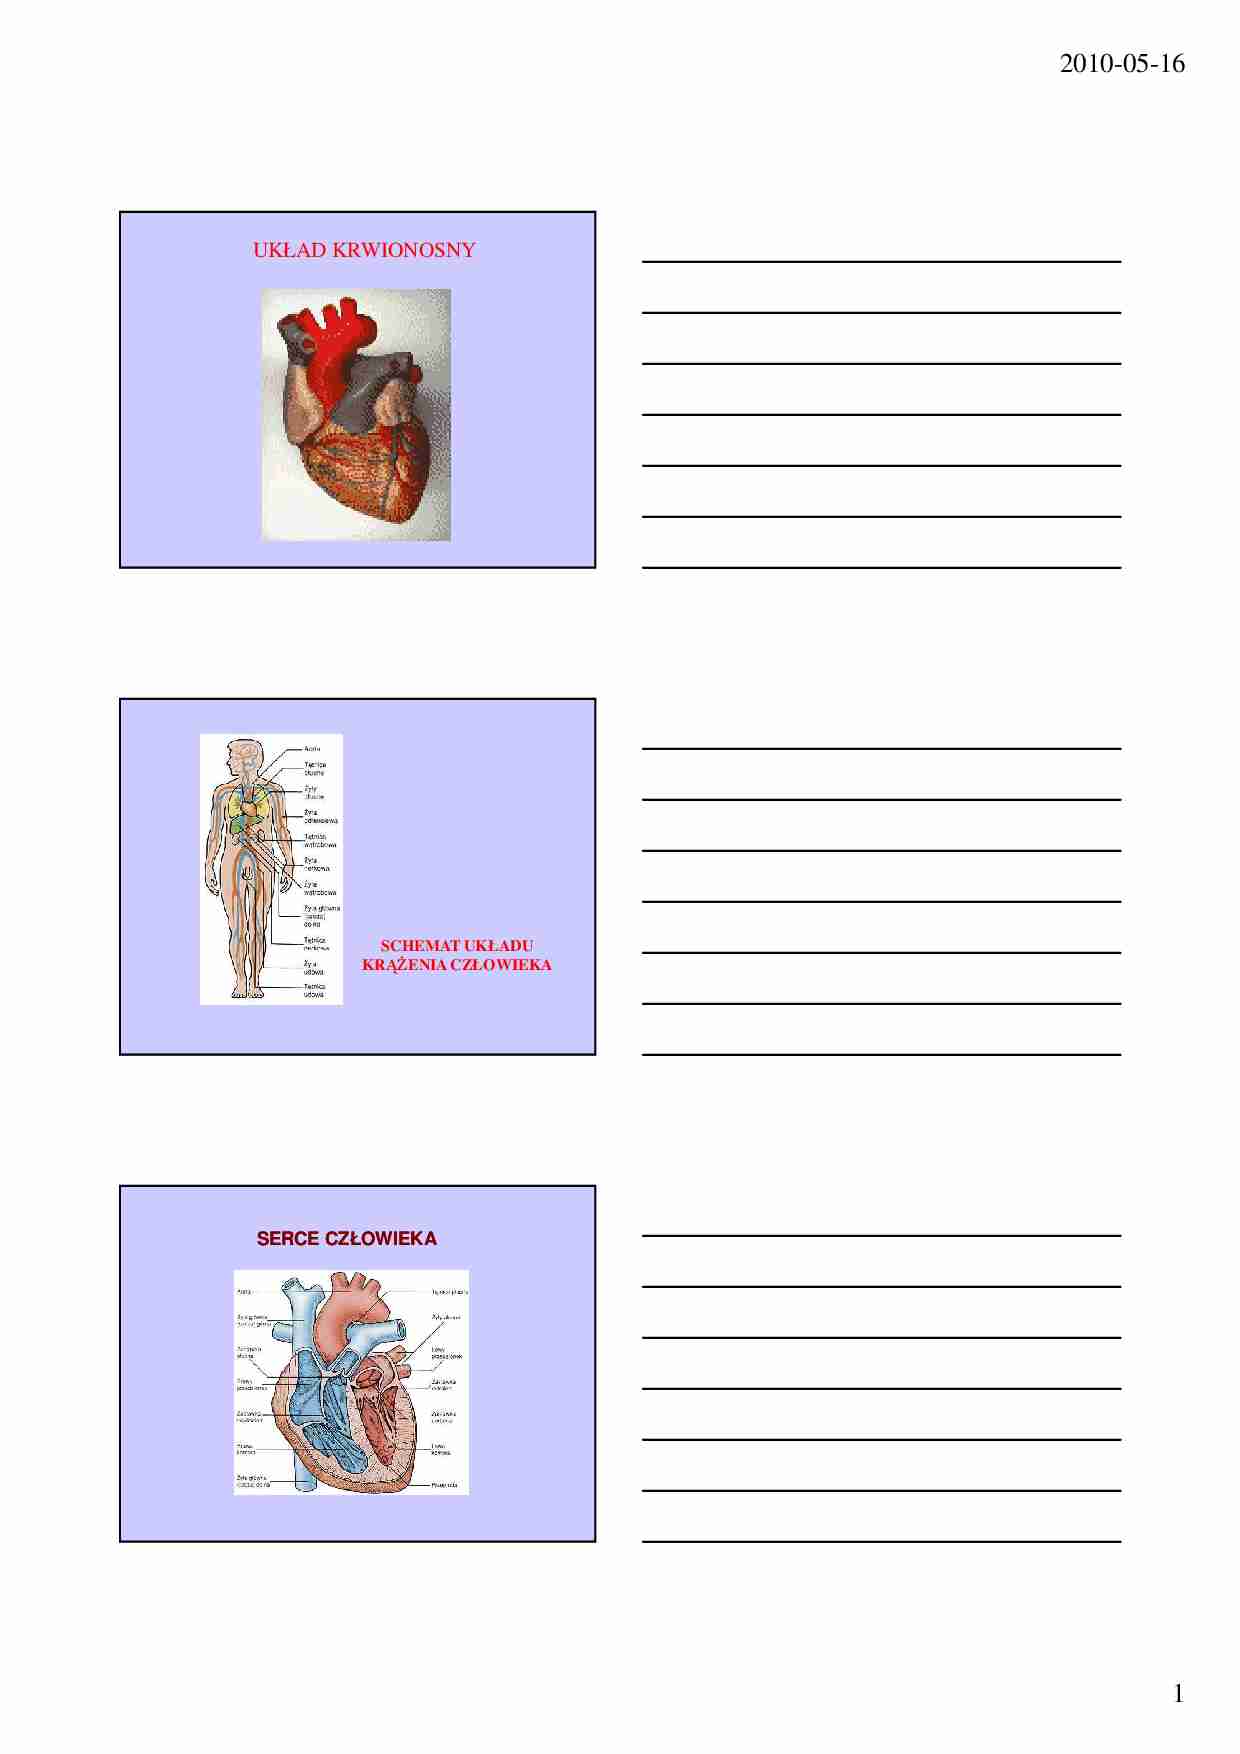 Serce, krwioobieg i wspomaganie pracy układu krążenia - strona 1